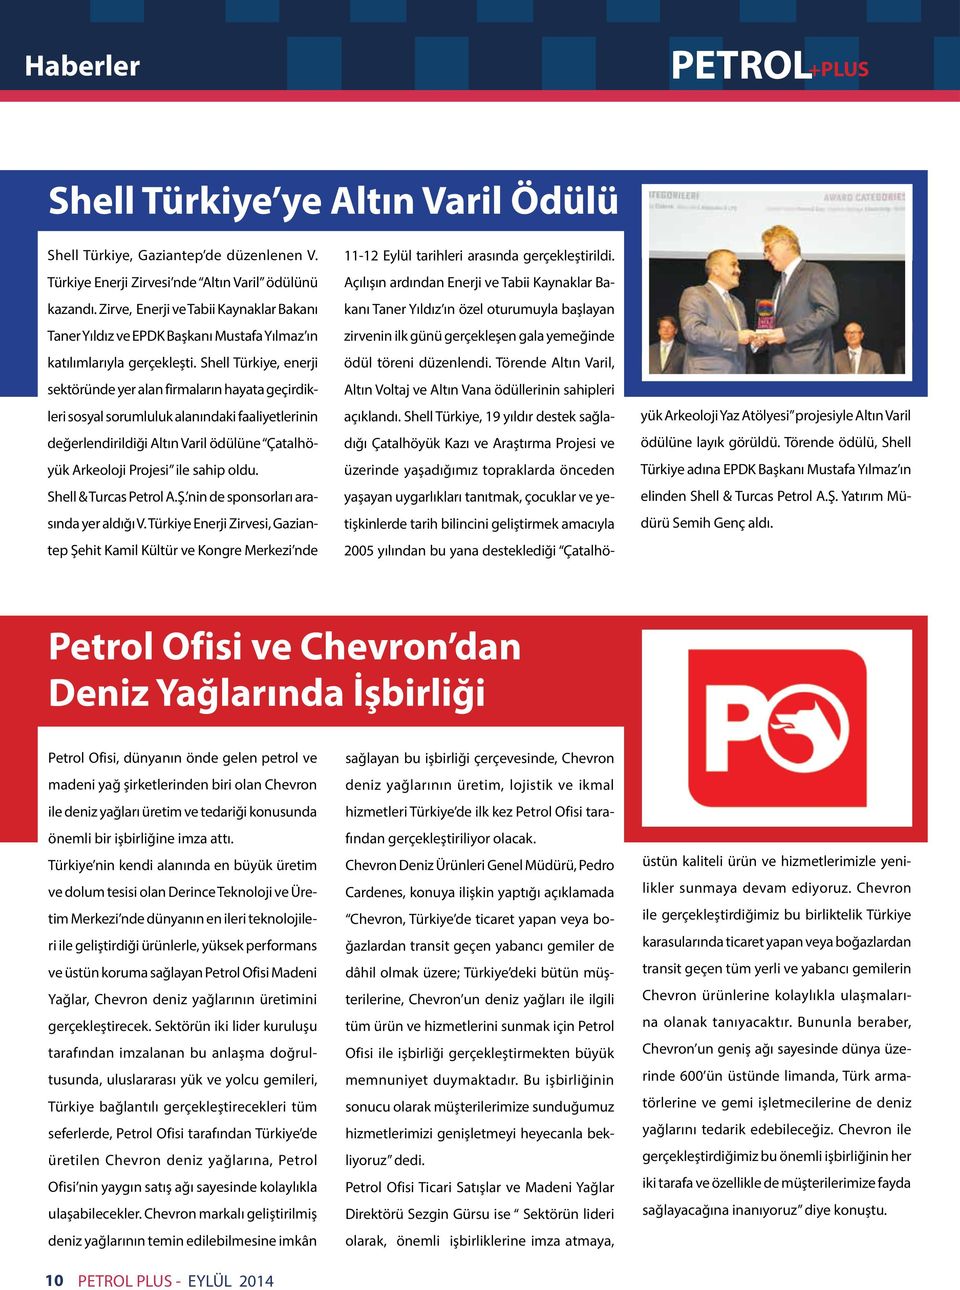 Shell Türkiye, enerji sektöründe yer alan firmaların hayata geçirdikleri sosyal sorumluluk alanındaki faaliyetlerinin değerlendirildiği Altın Varil ödülüne Çatalhöyük Arkeoloji Projesi ile sahip oldu.